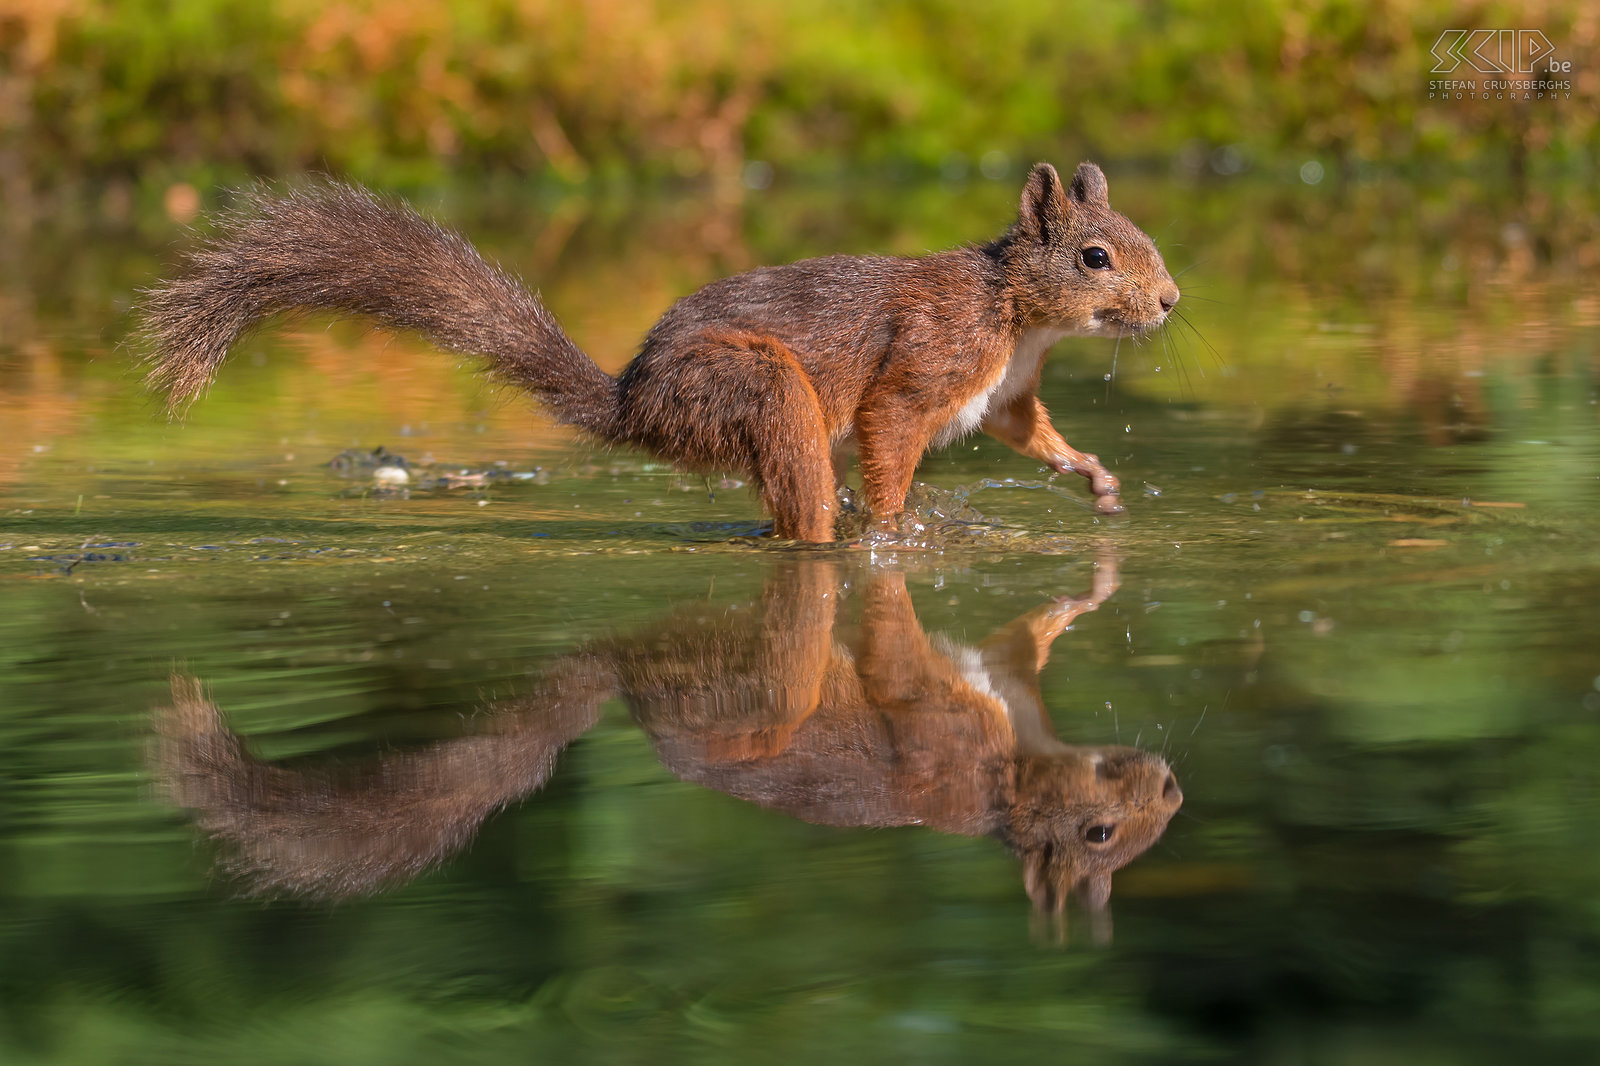 Eekhoorn in het water Tijdens een warme zomerdag liep deze eekhoorn door het water van een ondiepe poel wat een beeld met een prachtige reflectie opleverde Stefan Cruysberghs